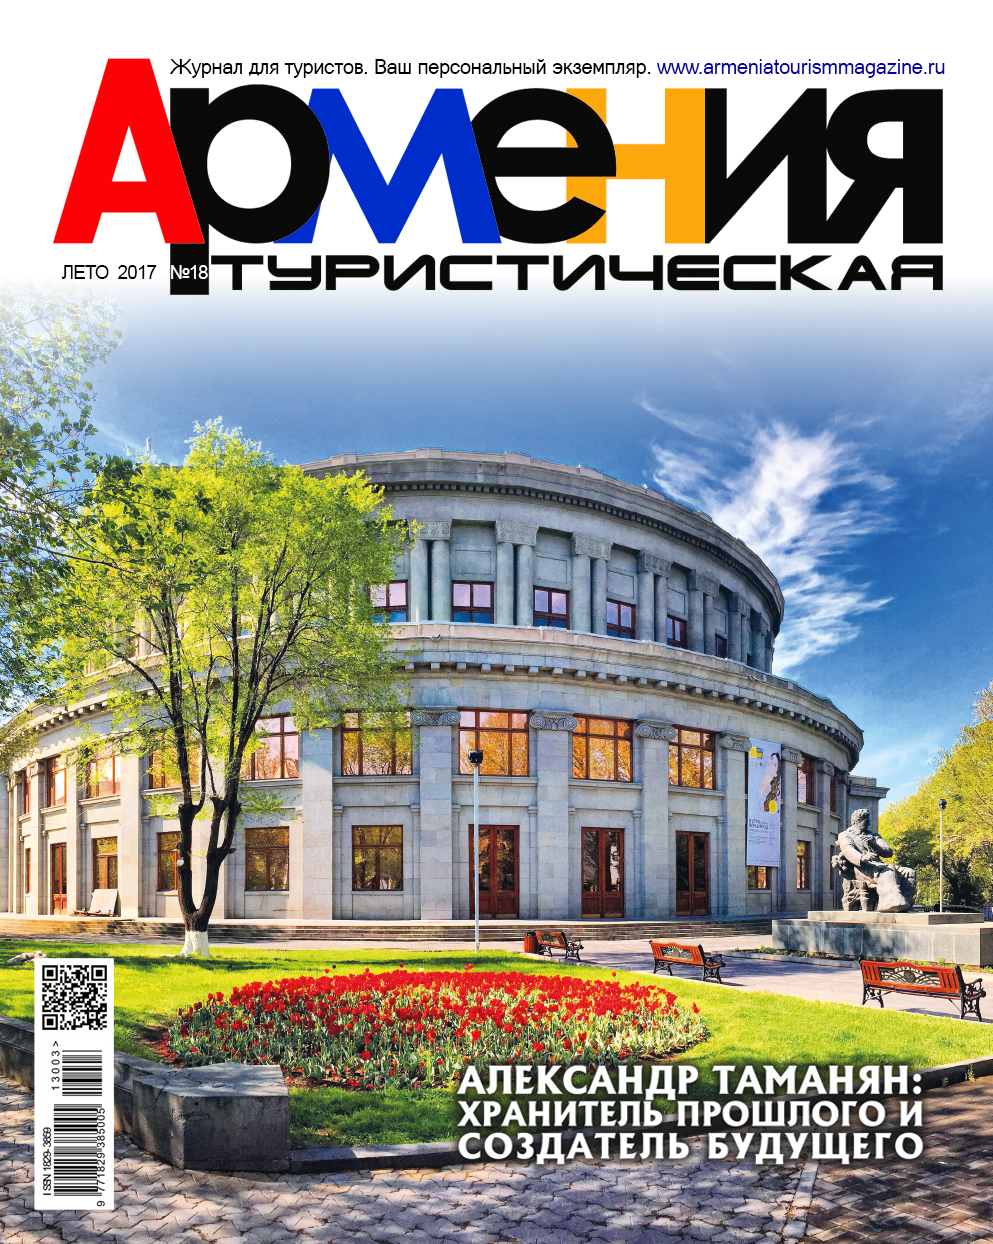 Армения туристическая, № 20